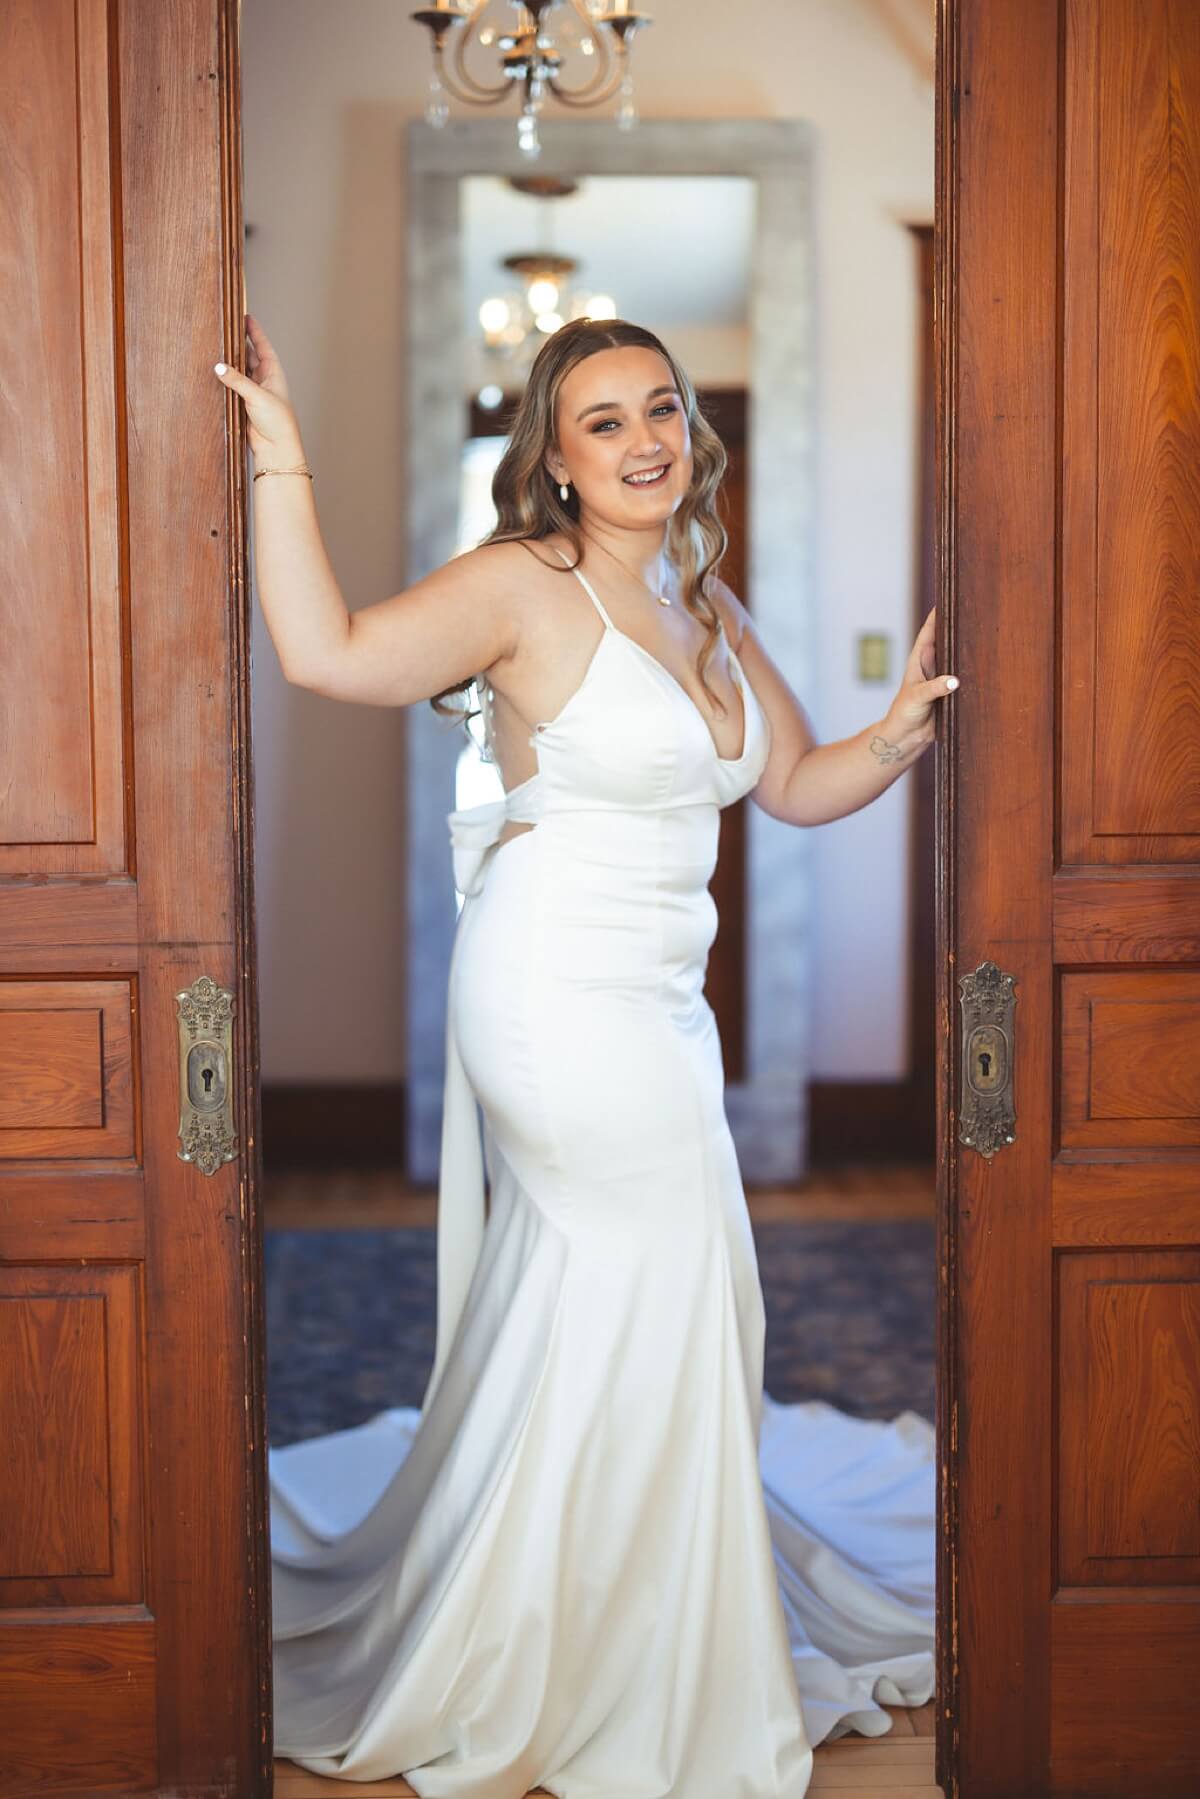 Bride wearing satin wedding dress standing in between wooden sliding doors